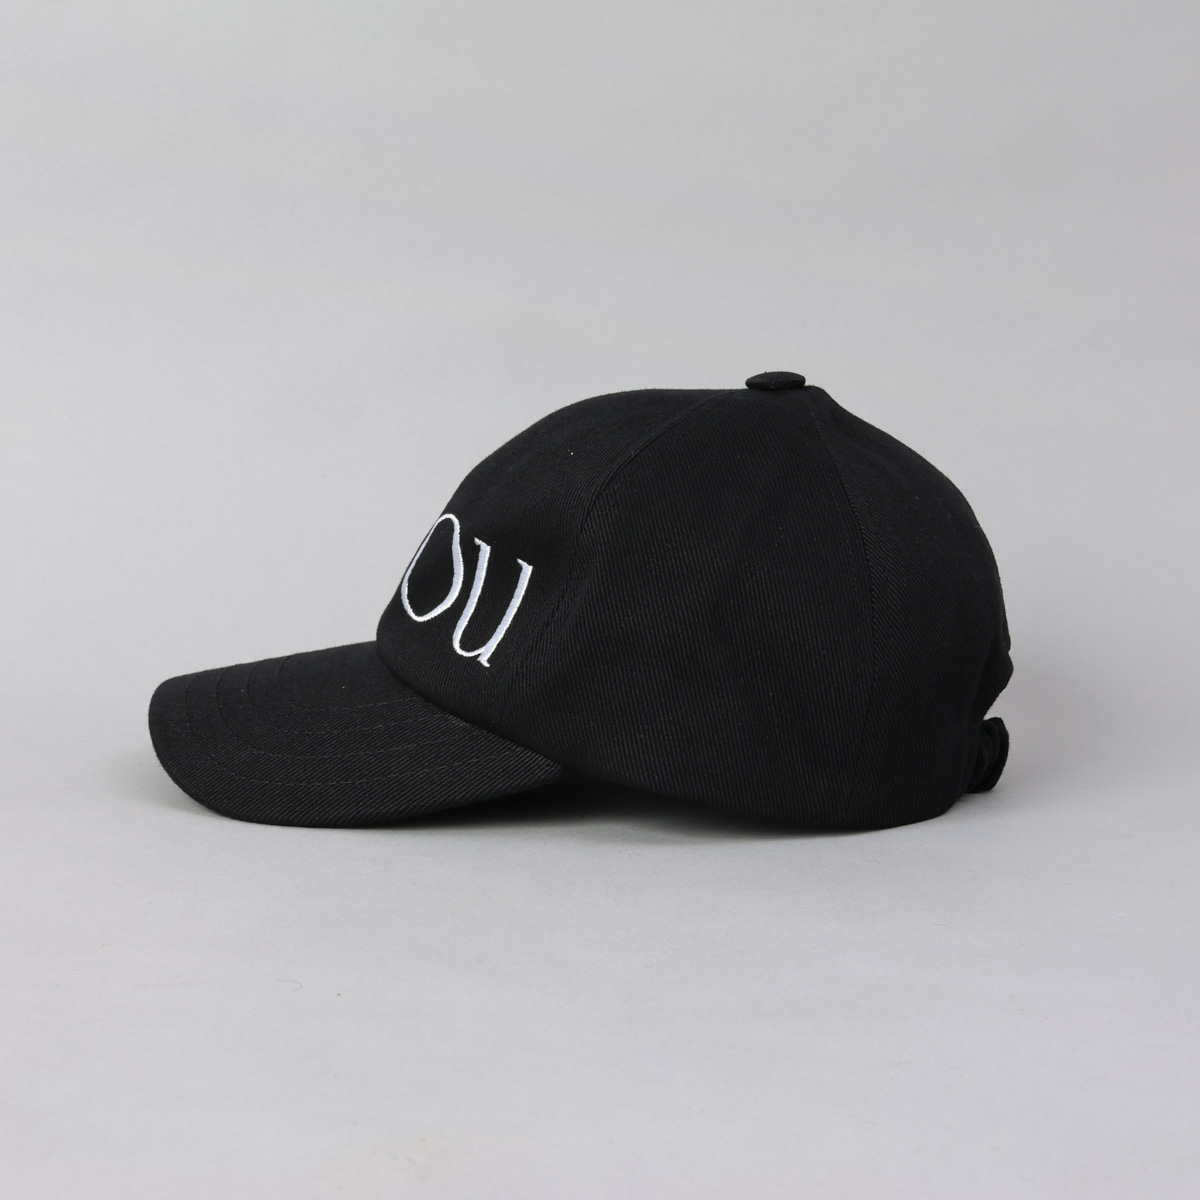 パトゥ PATOU キャップ 帽子 ブランドロゴ 無地 白 シンプル 人気 